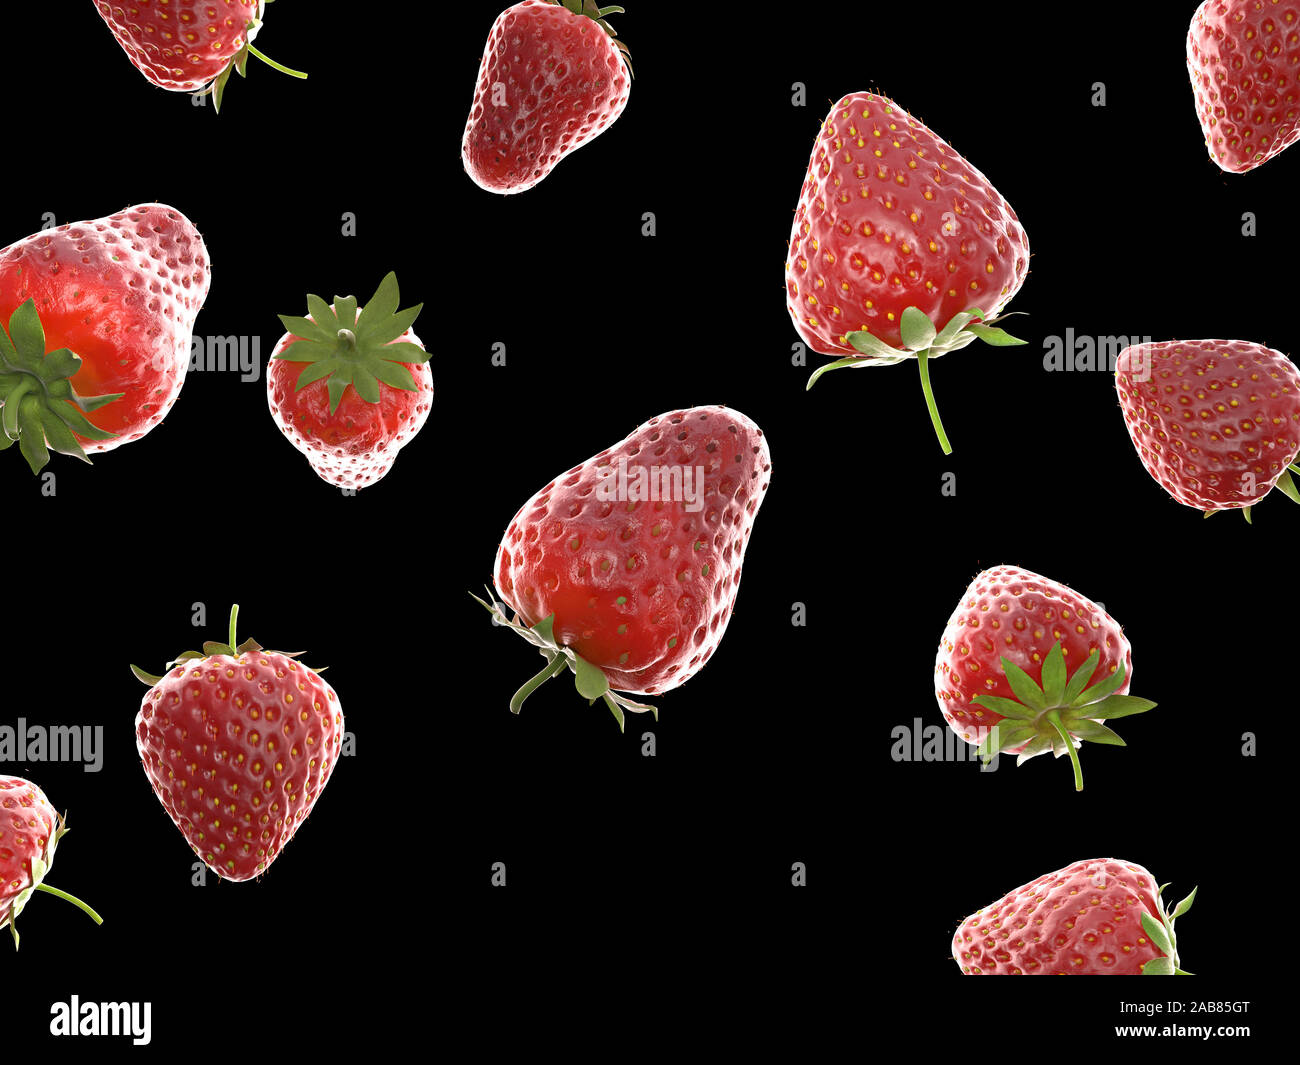 La nourriture en rendu 3d illustration de fraises Banque D'Images